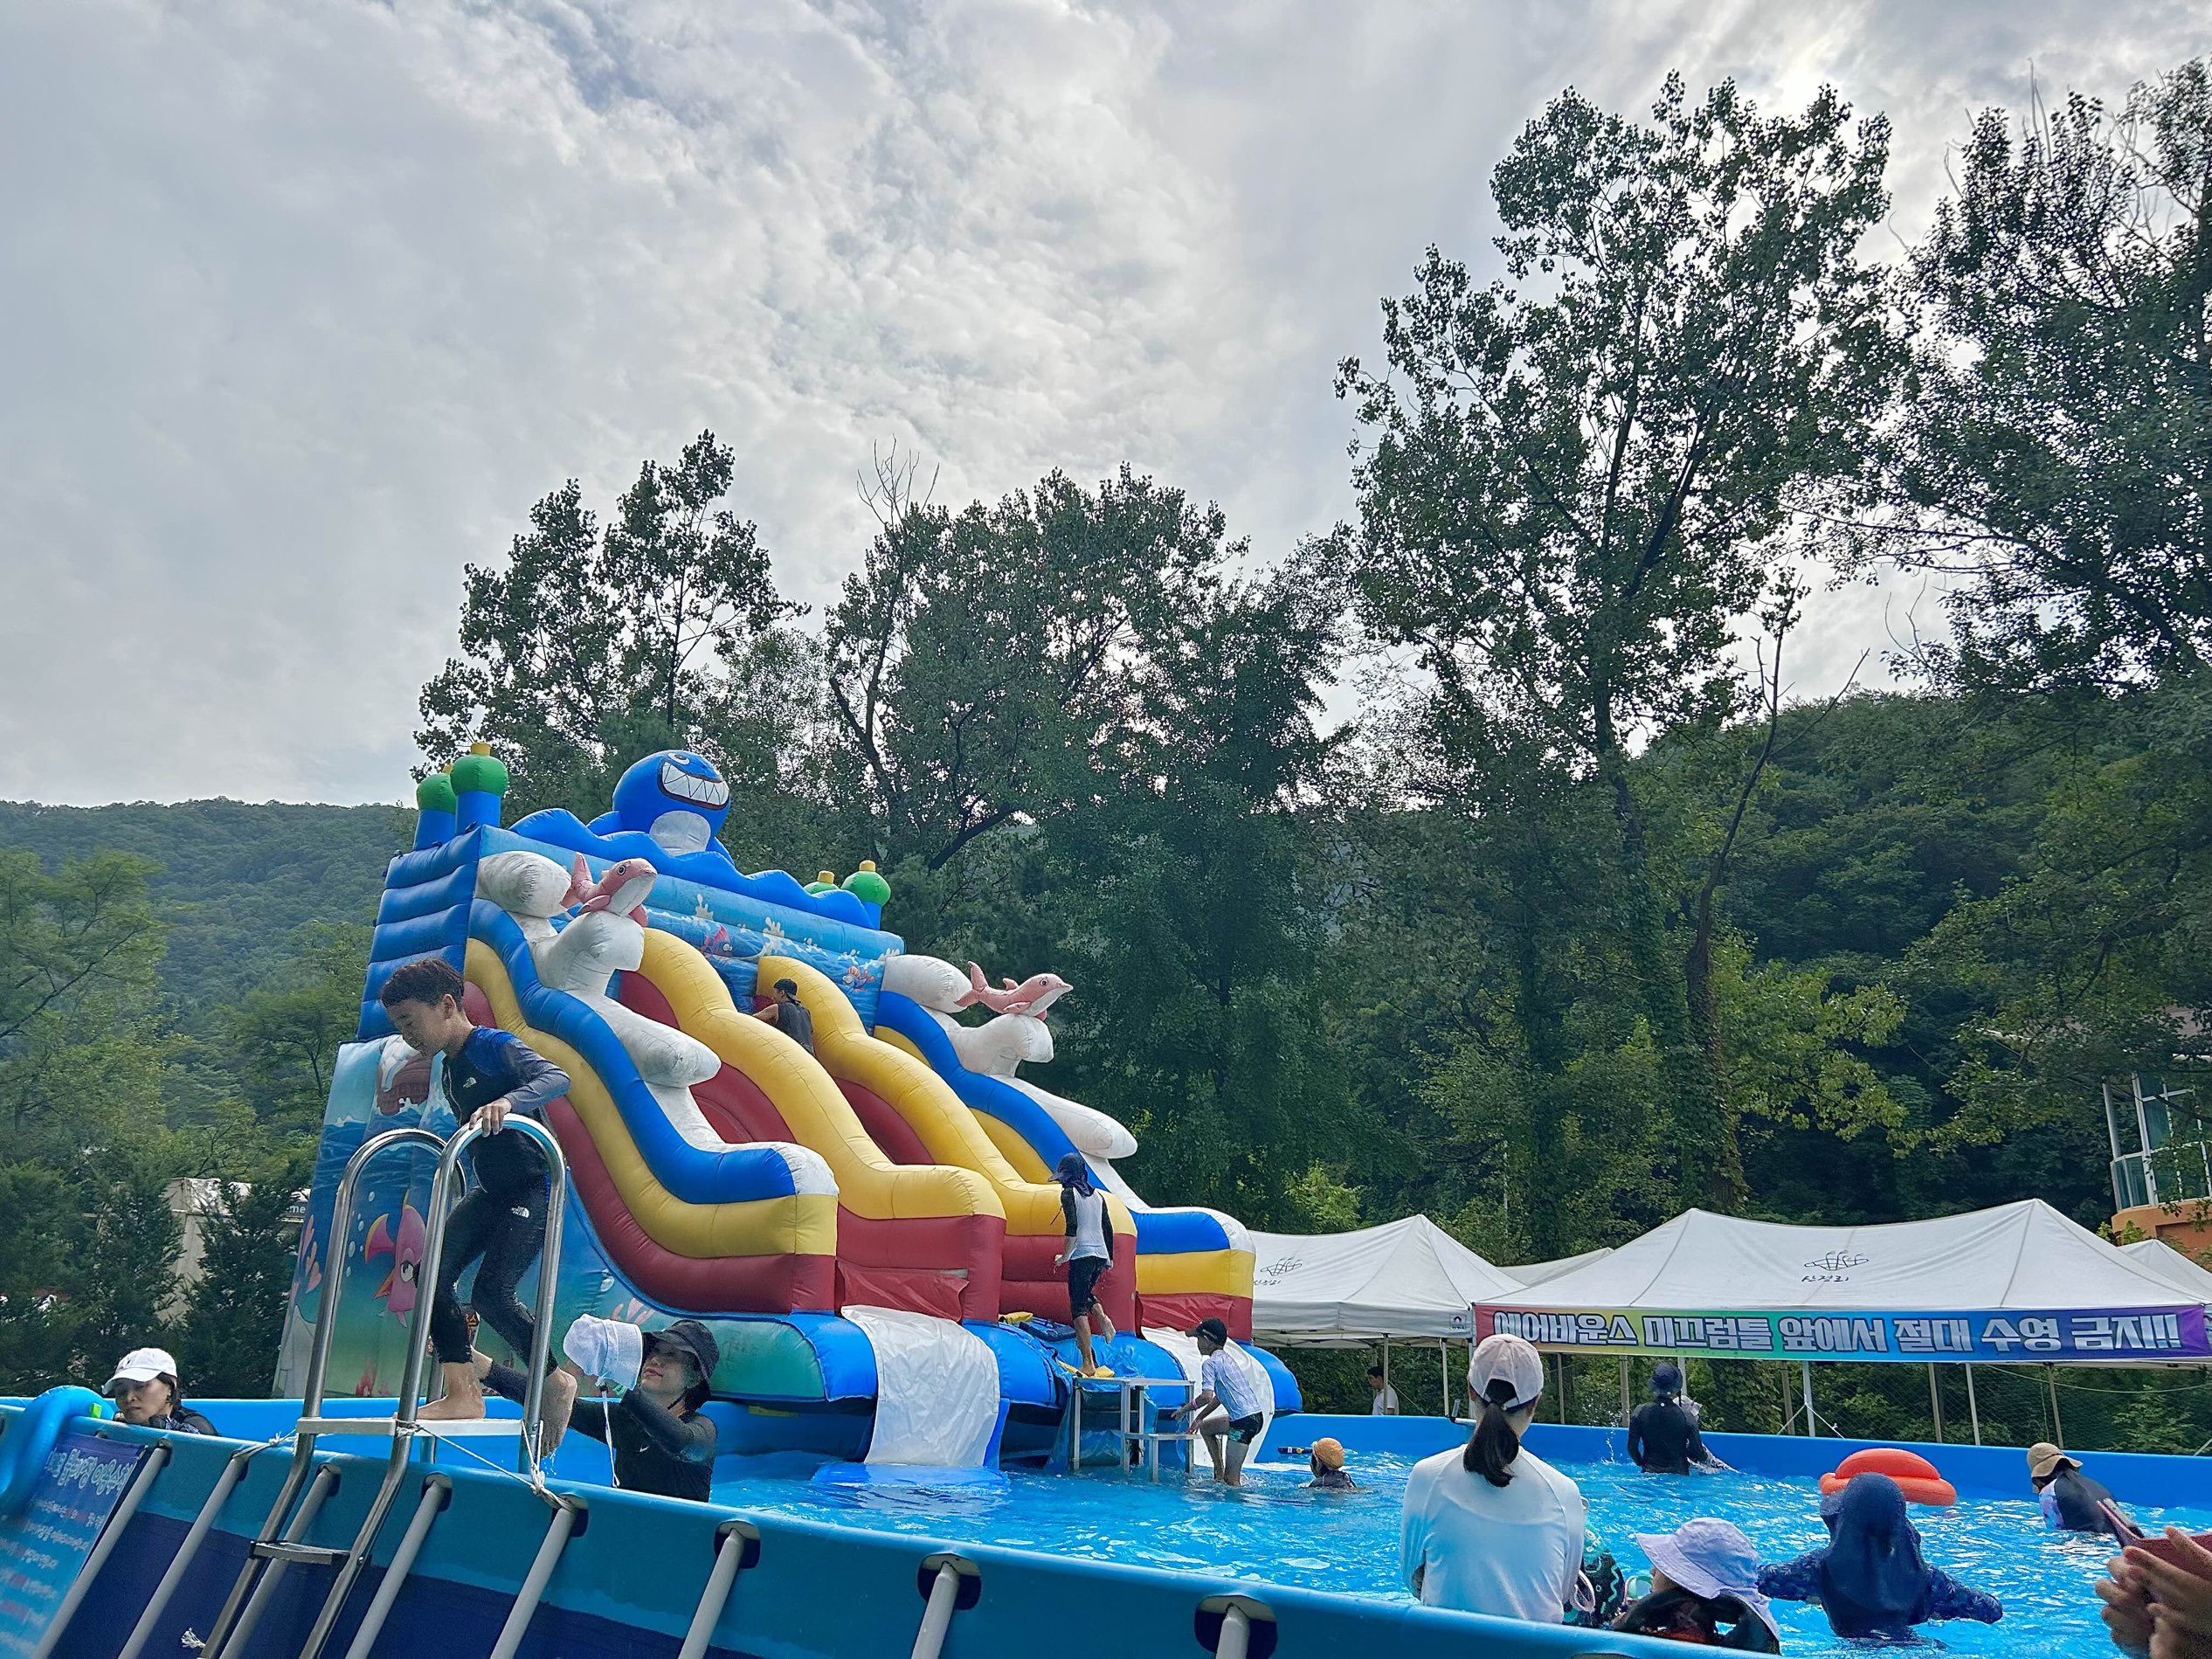 山上生态水上乐园,您可以与孩子们度过凉爽的夏天